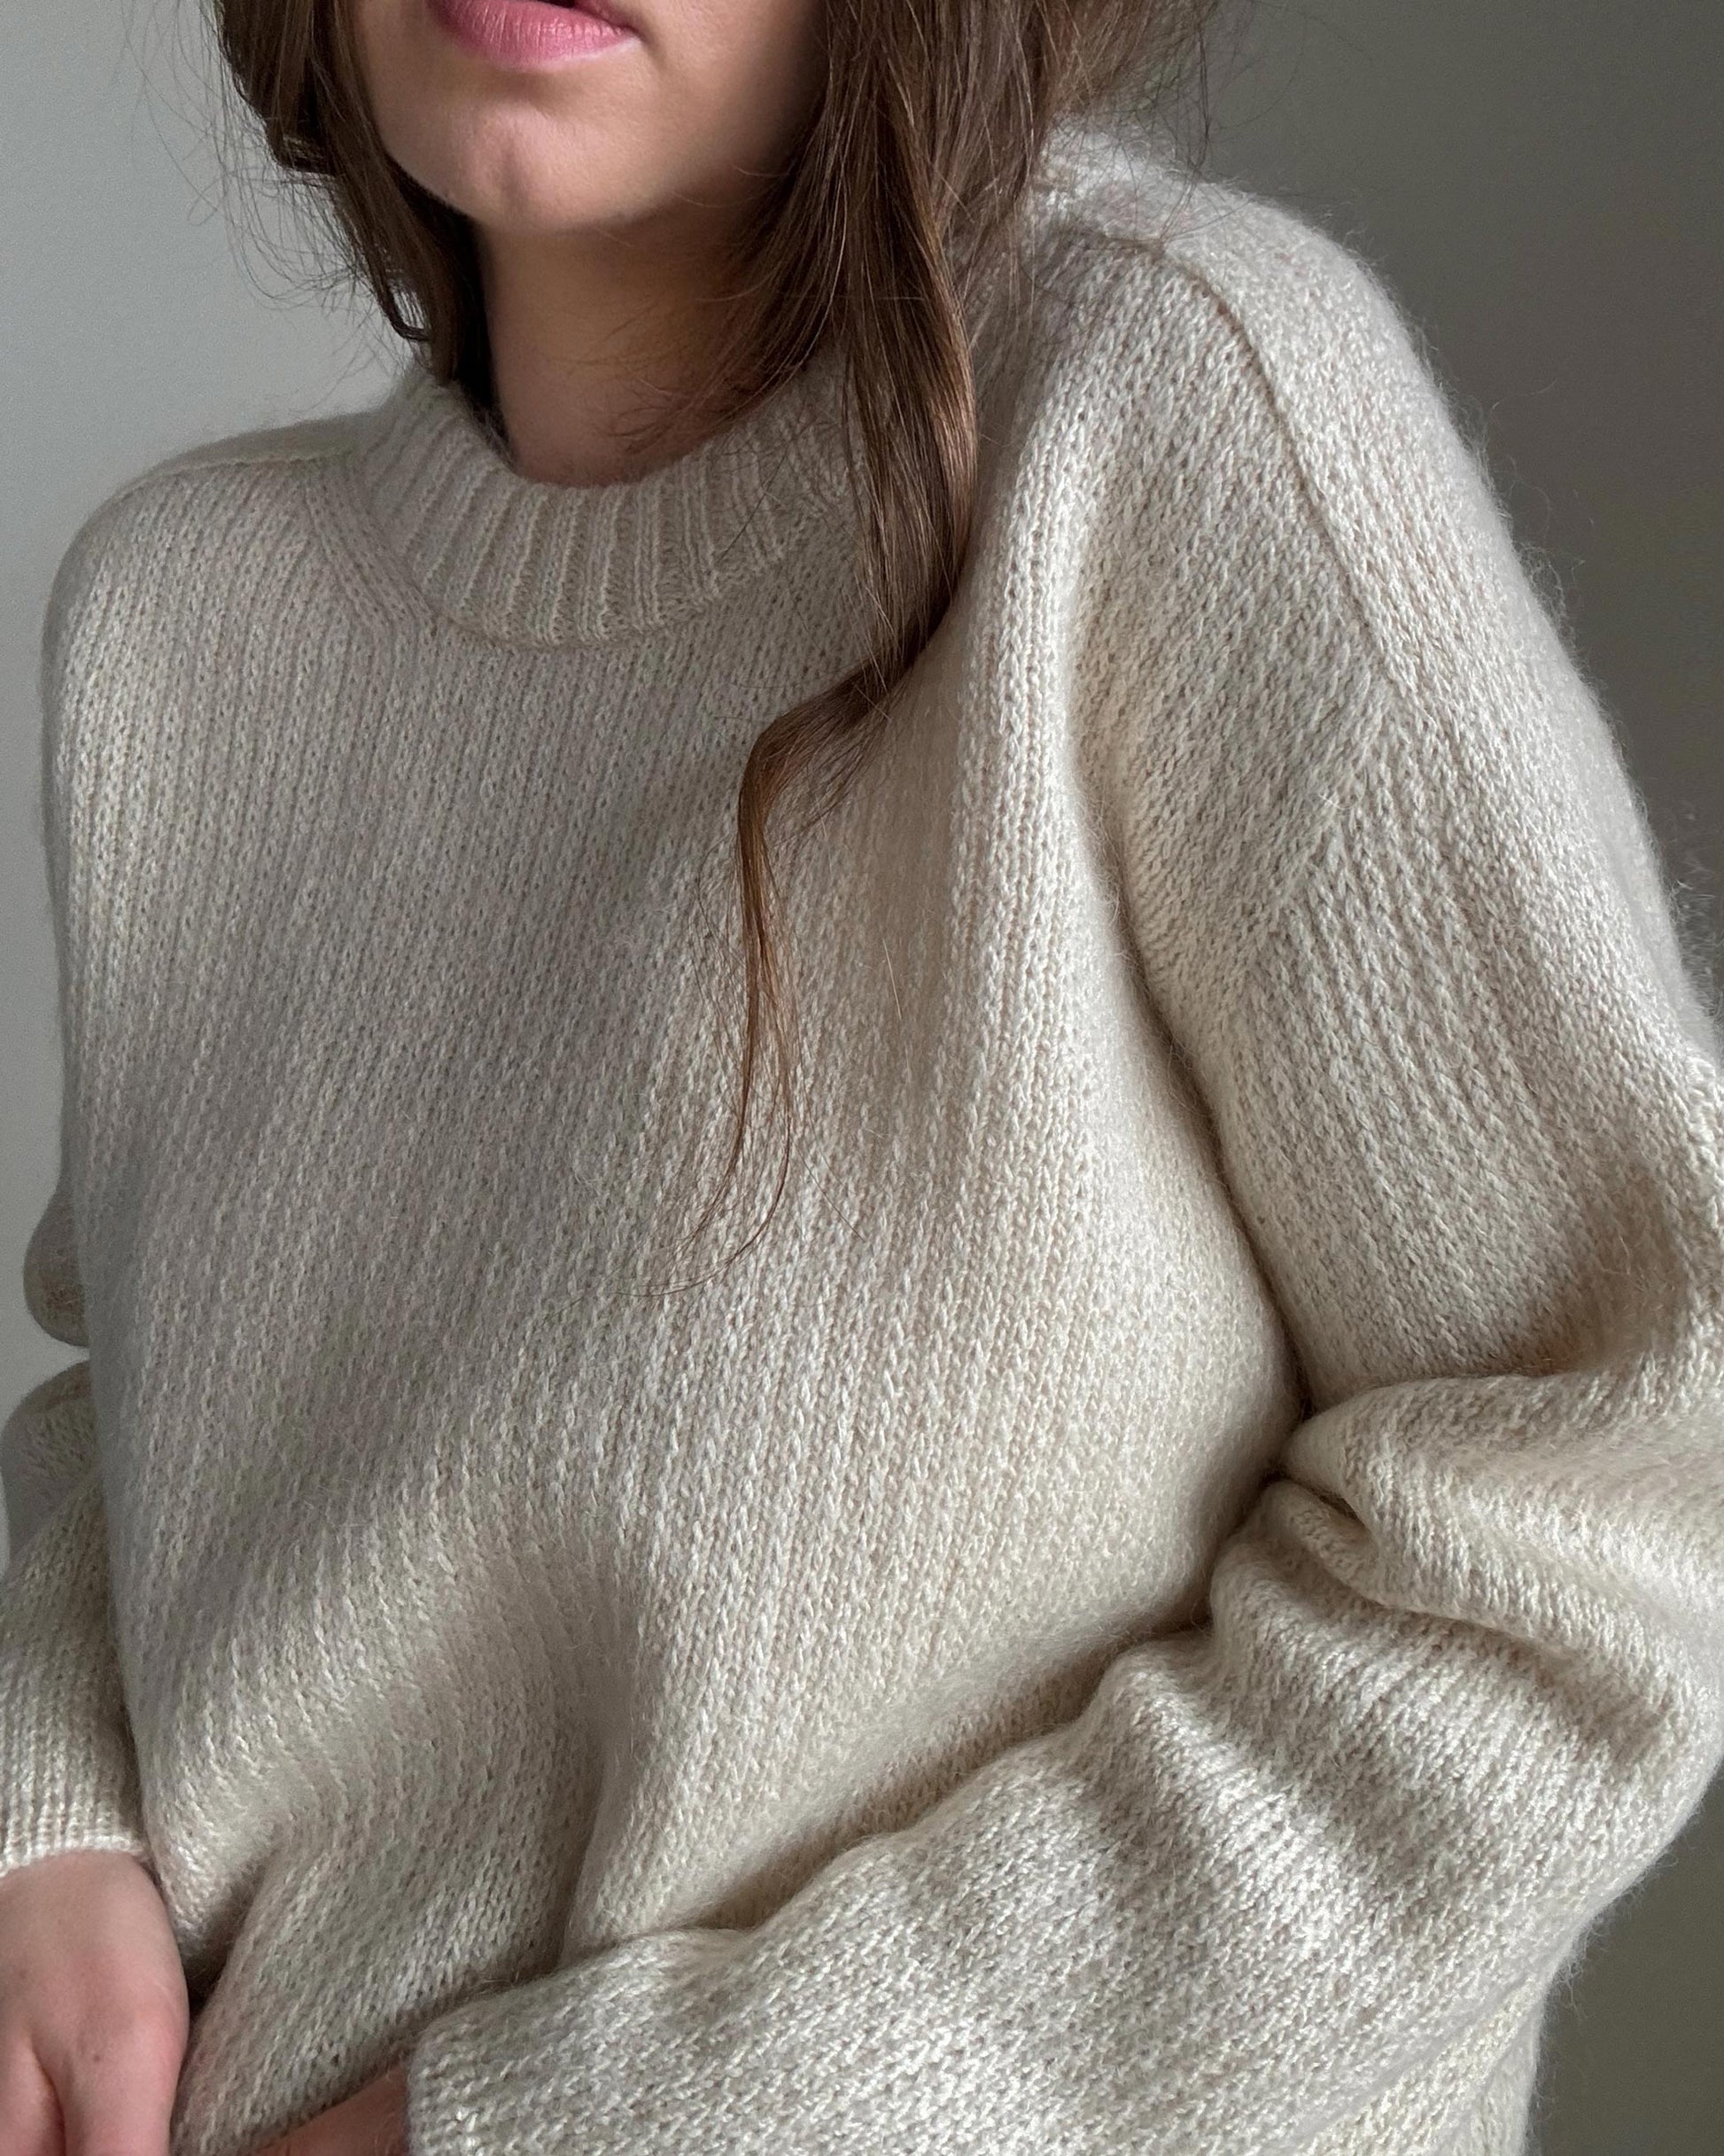 Sport gauge knit scheme for Chantal Sweater, a basic yet refined garment for women's knitwear.